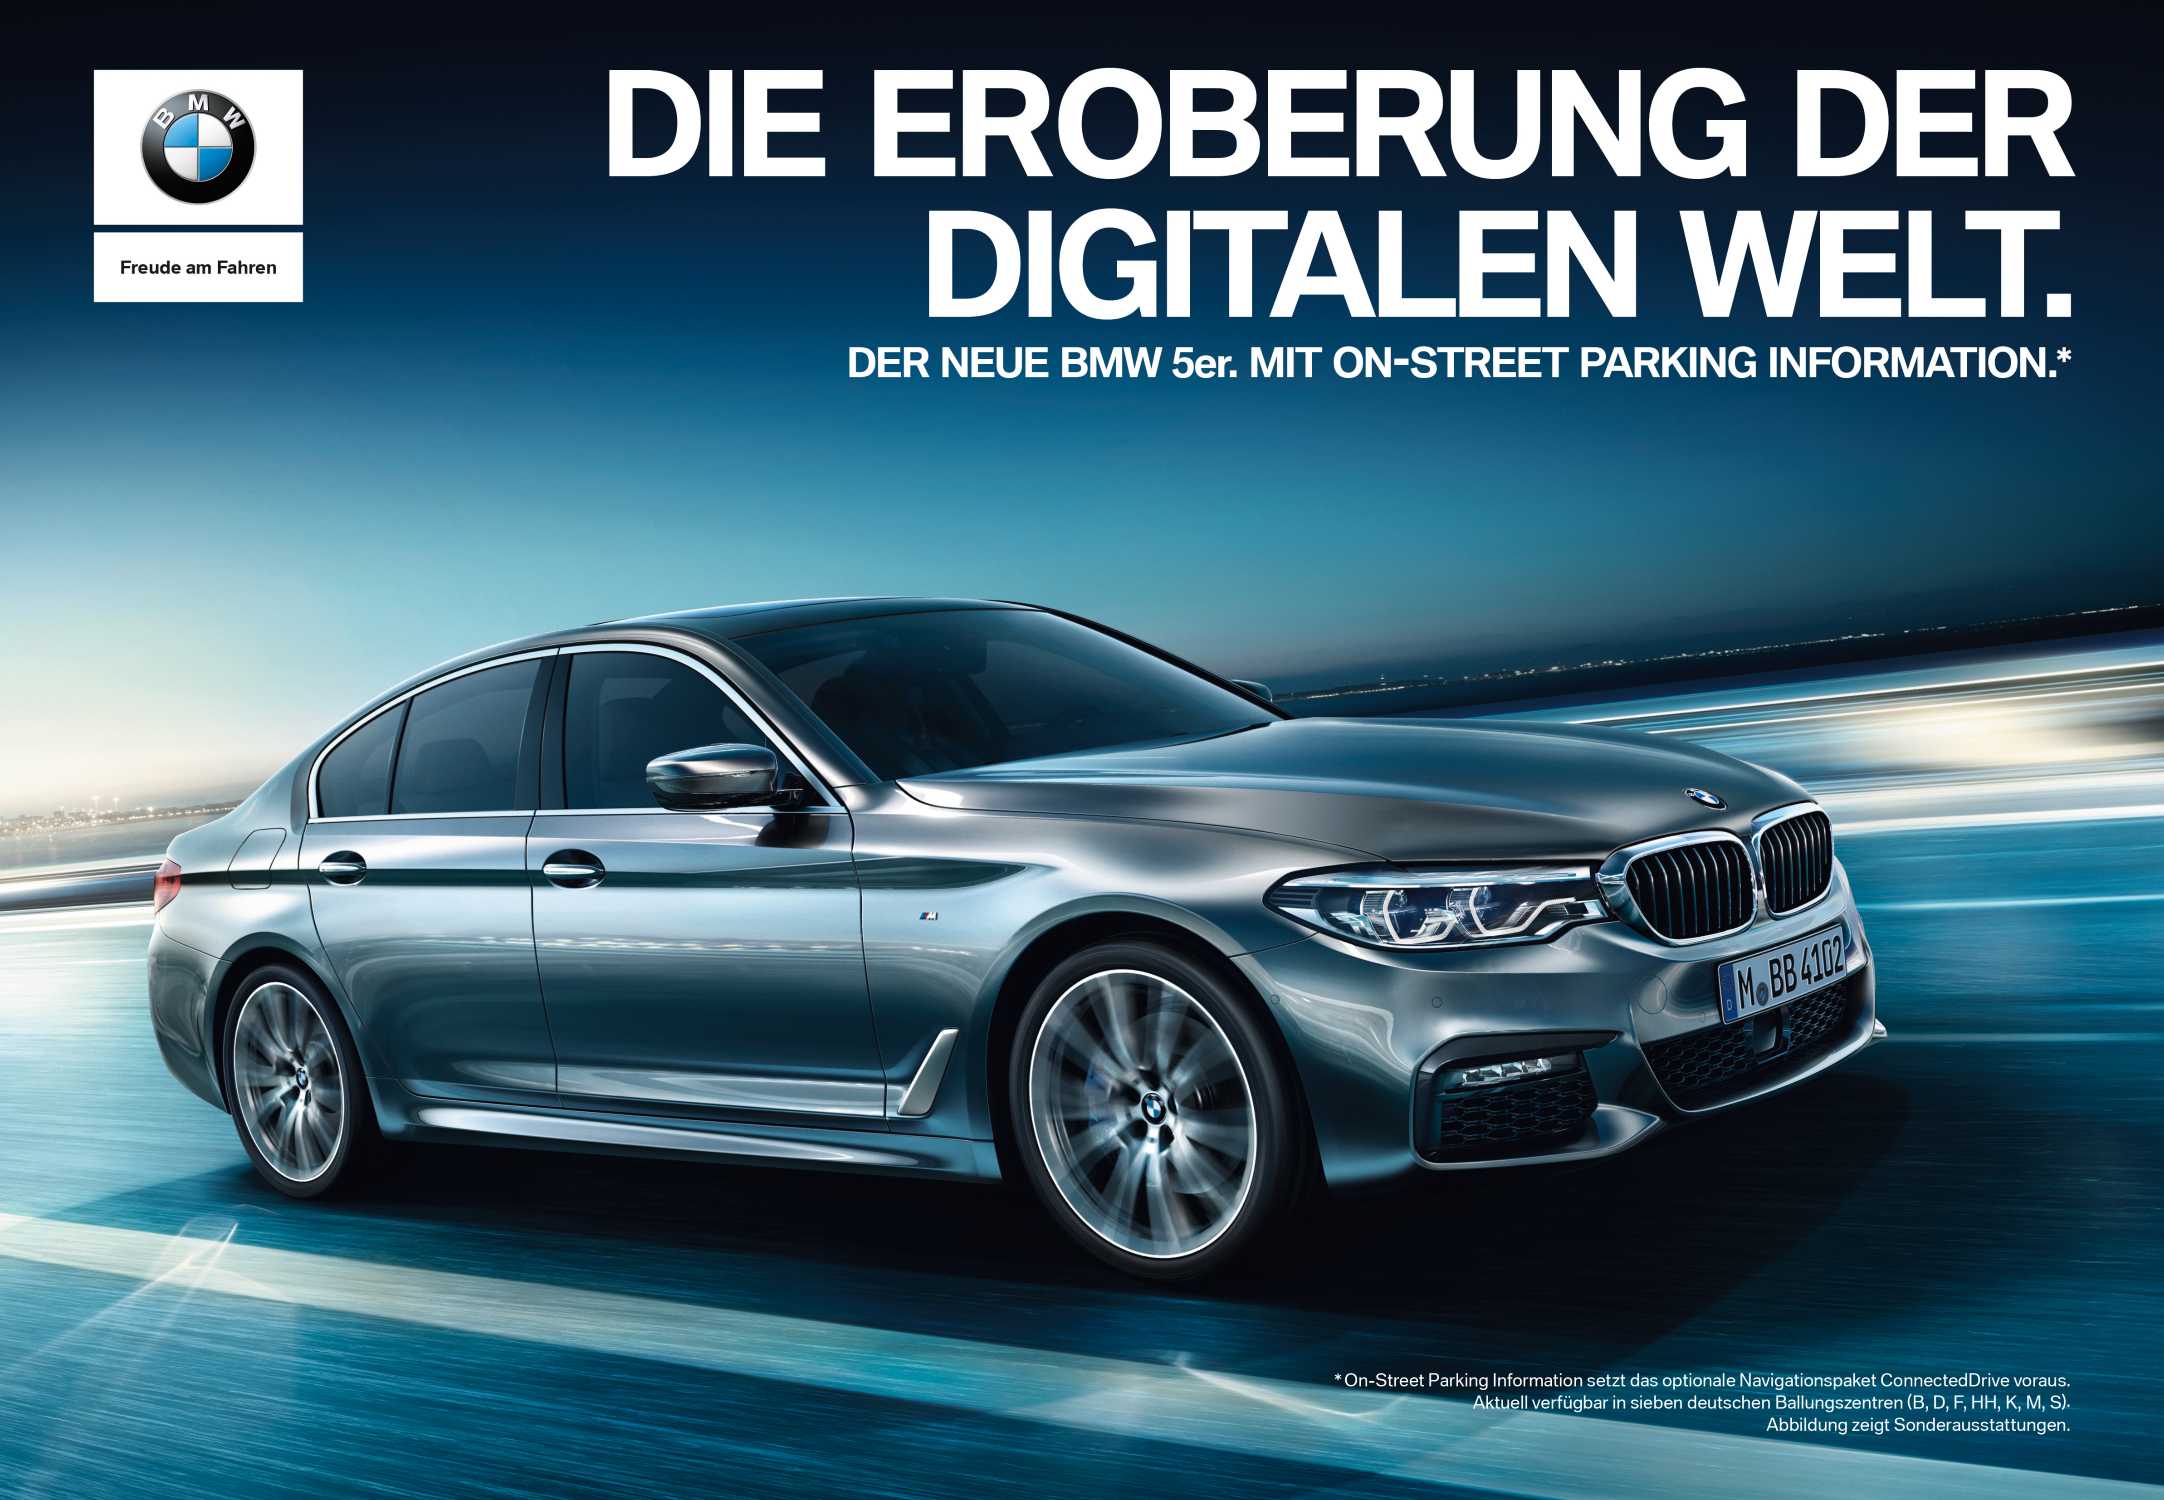 DIE EROBERUNG DER DIGITALEN WELT. Kampagne für die neue BMW 5er Limousine in Deutschland. Printmotiv Titelgatefolder. (01/2017)